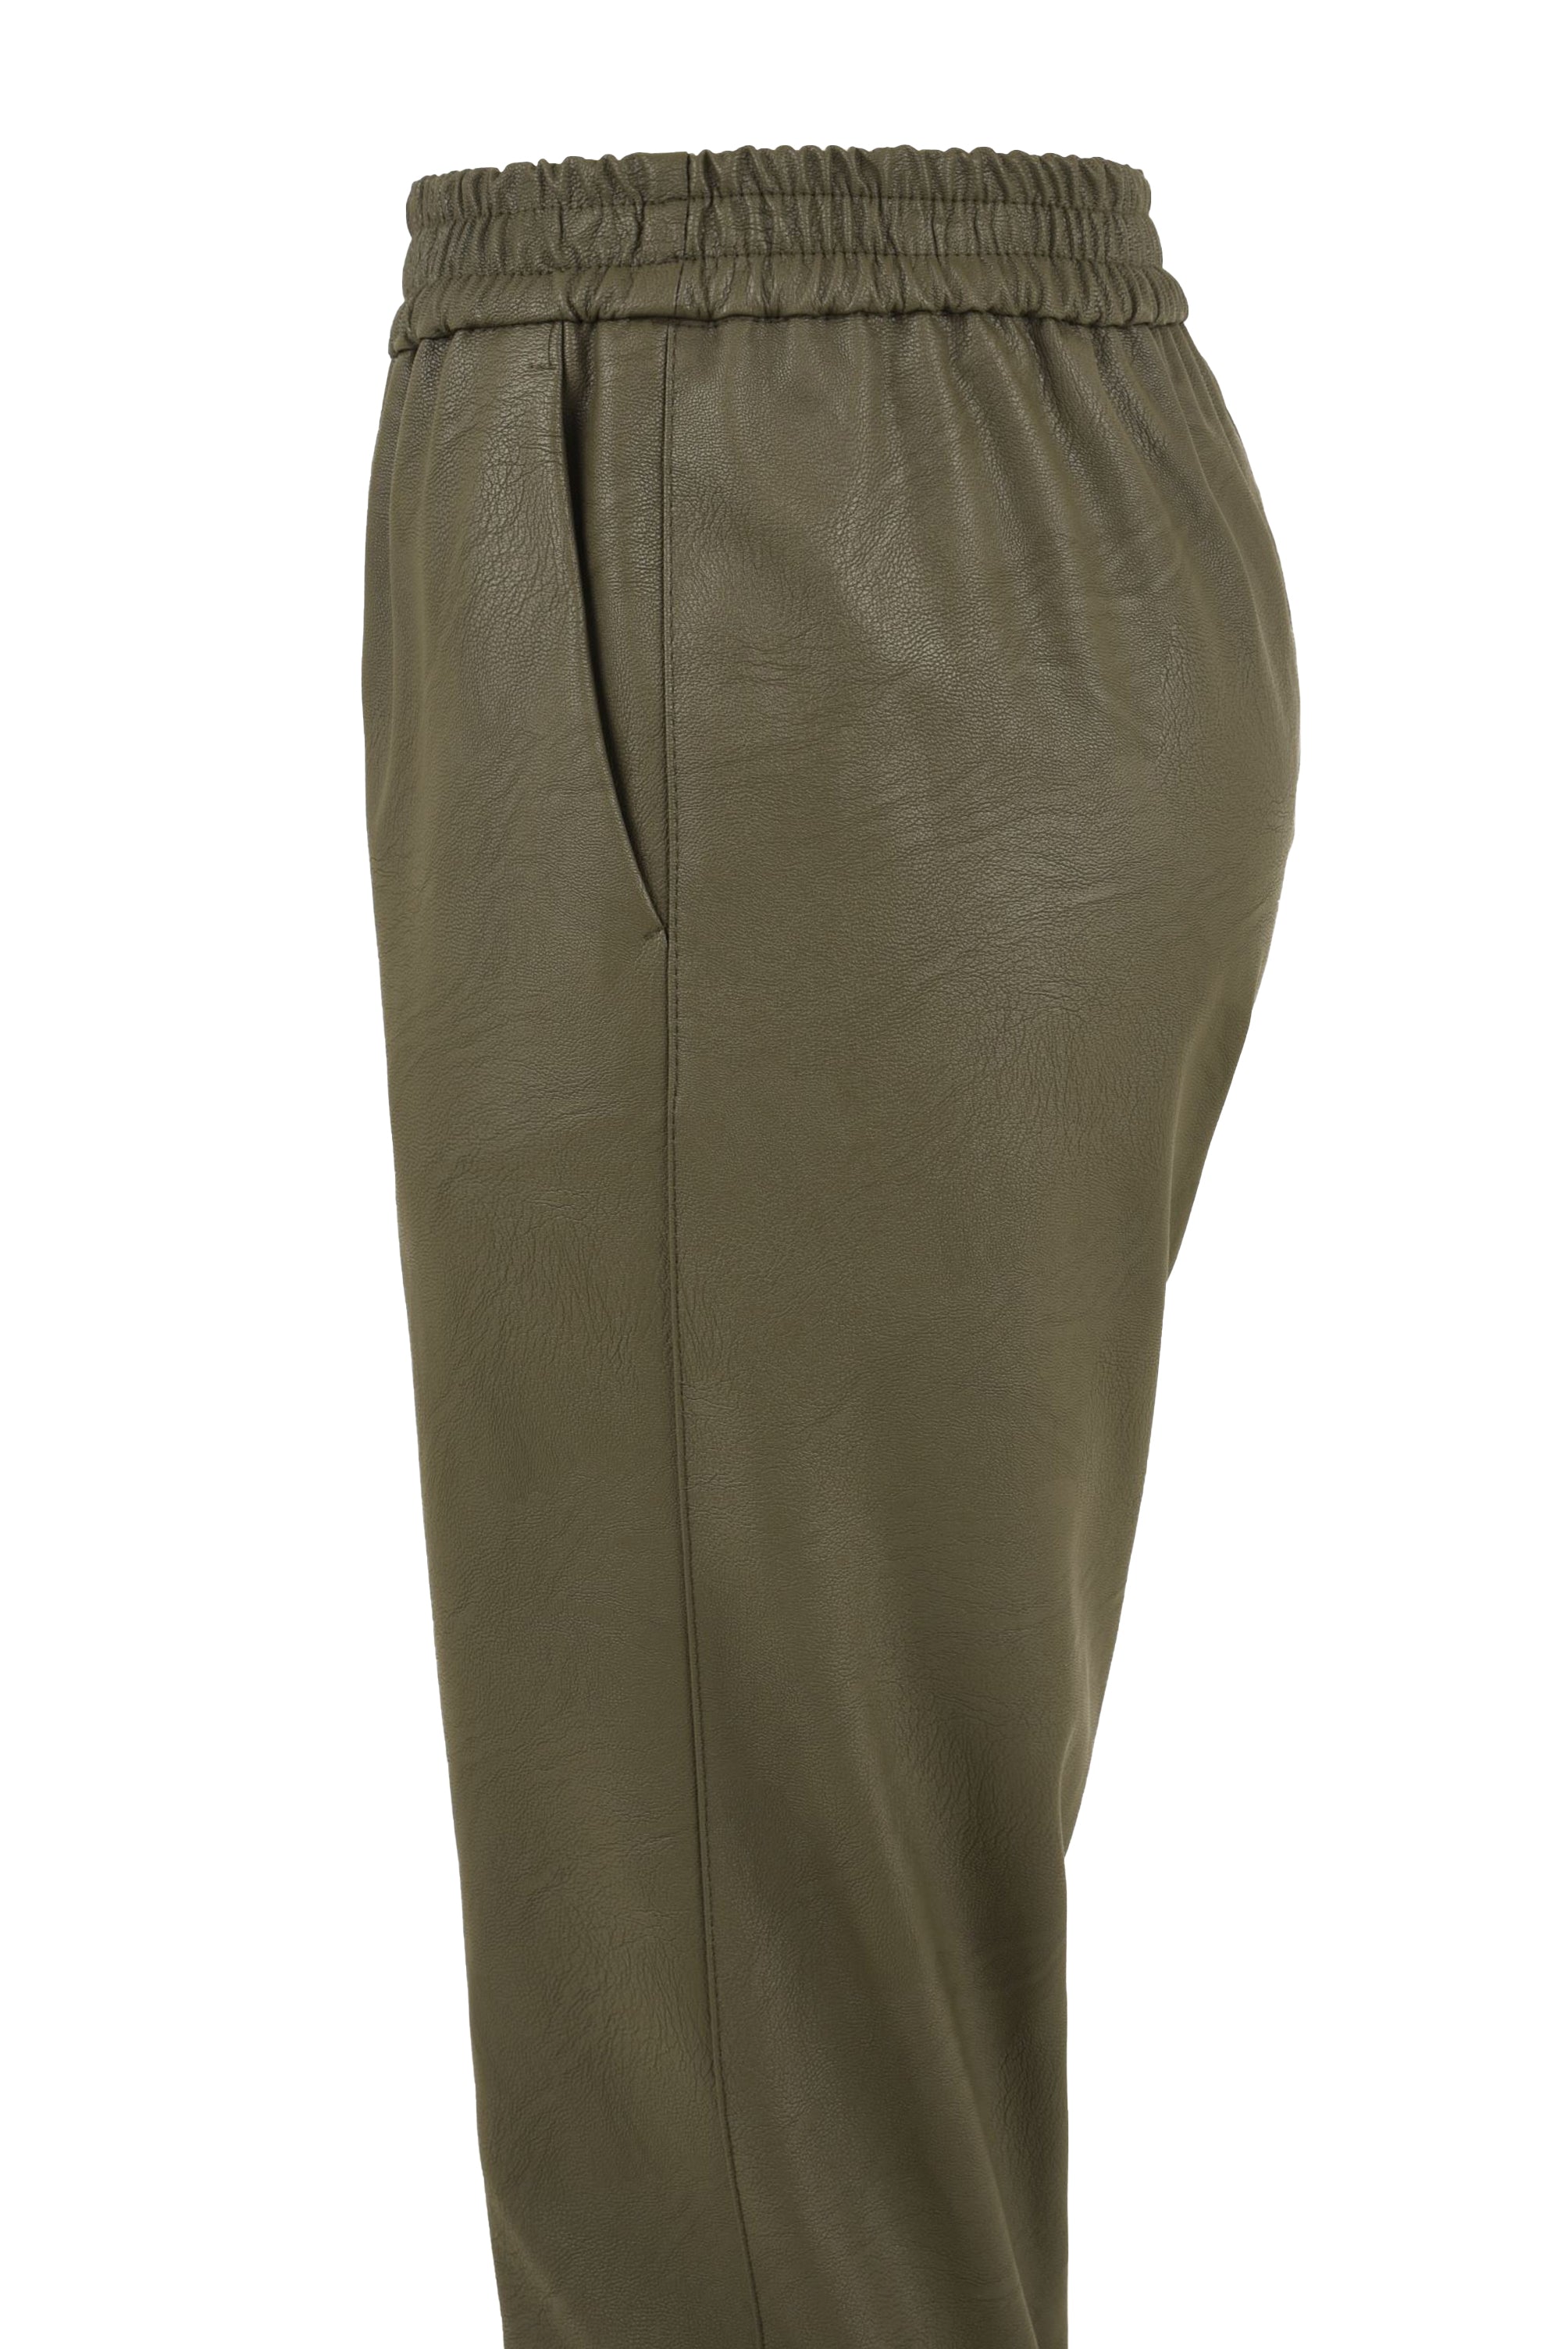 Pantalone Donna ecopelle verde, Solotre, lato